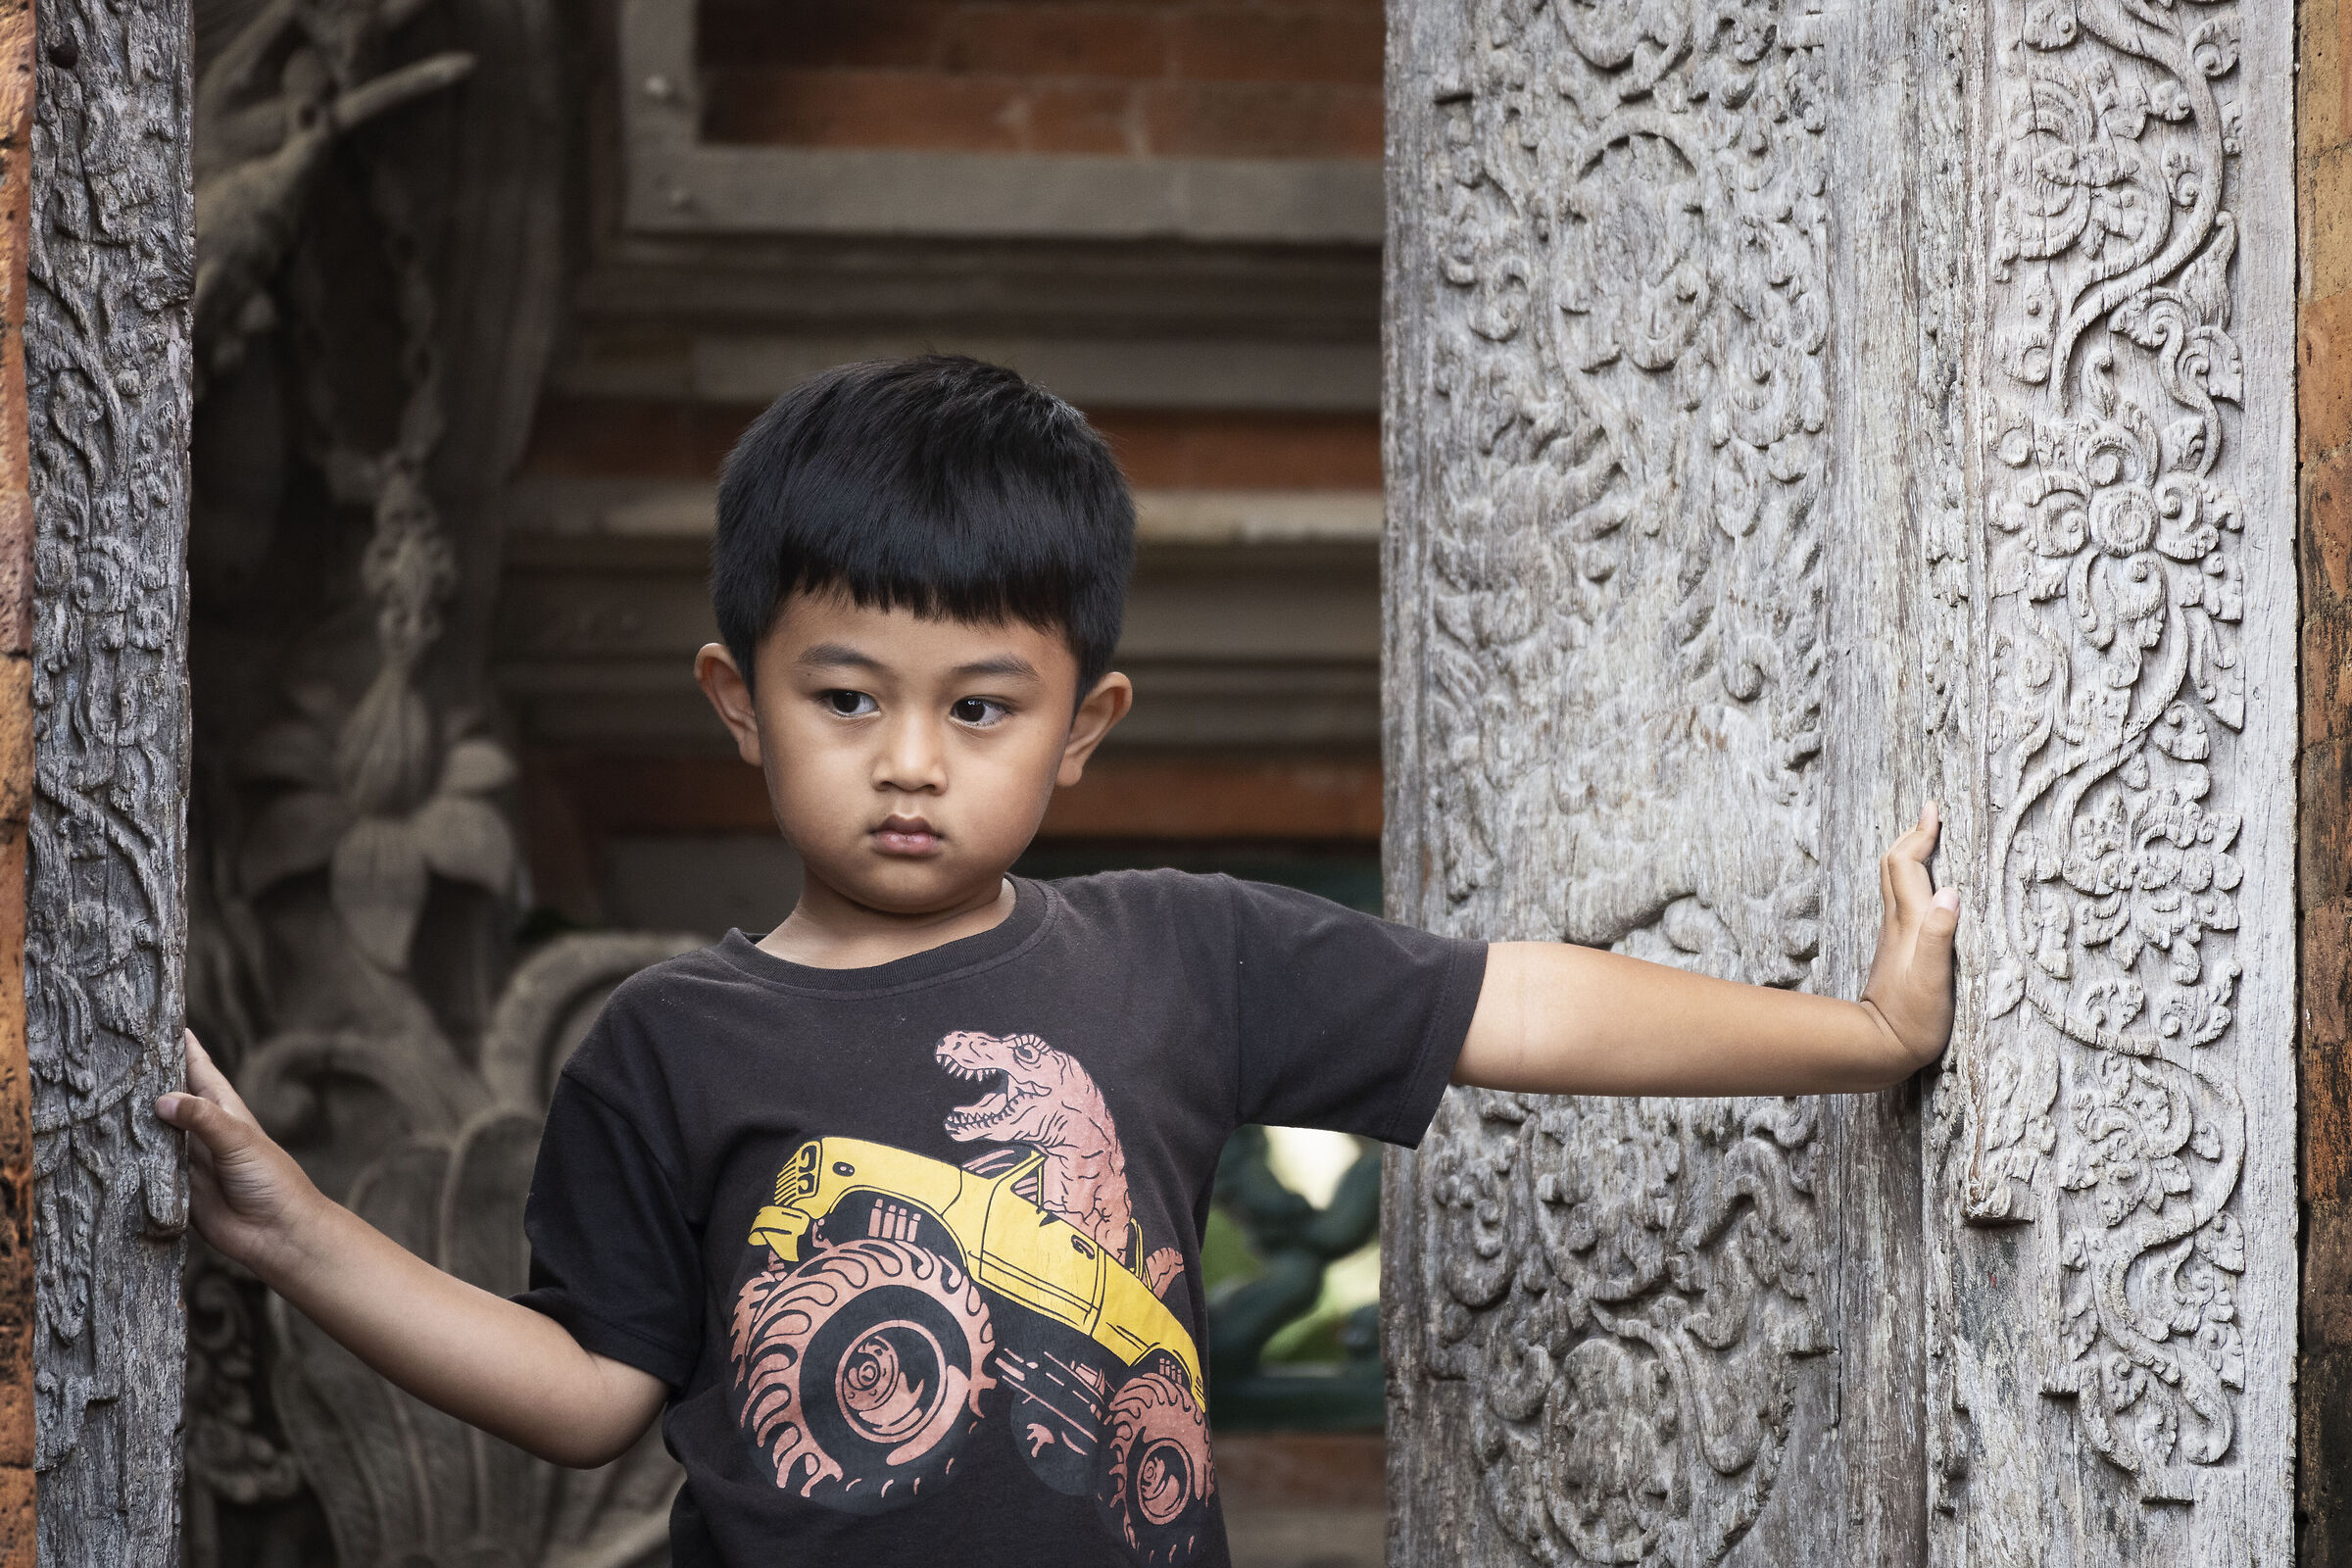 Child at Ubud palace. Indonesia...